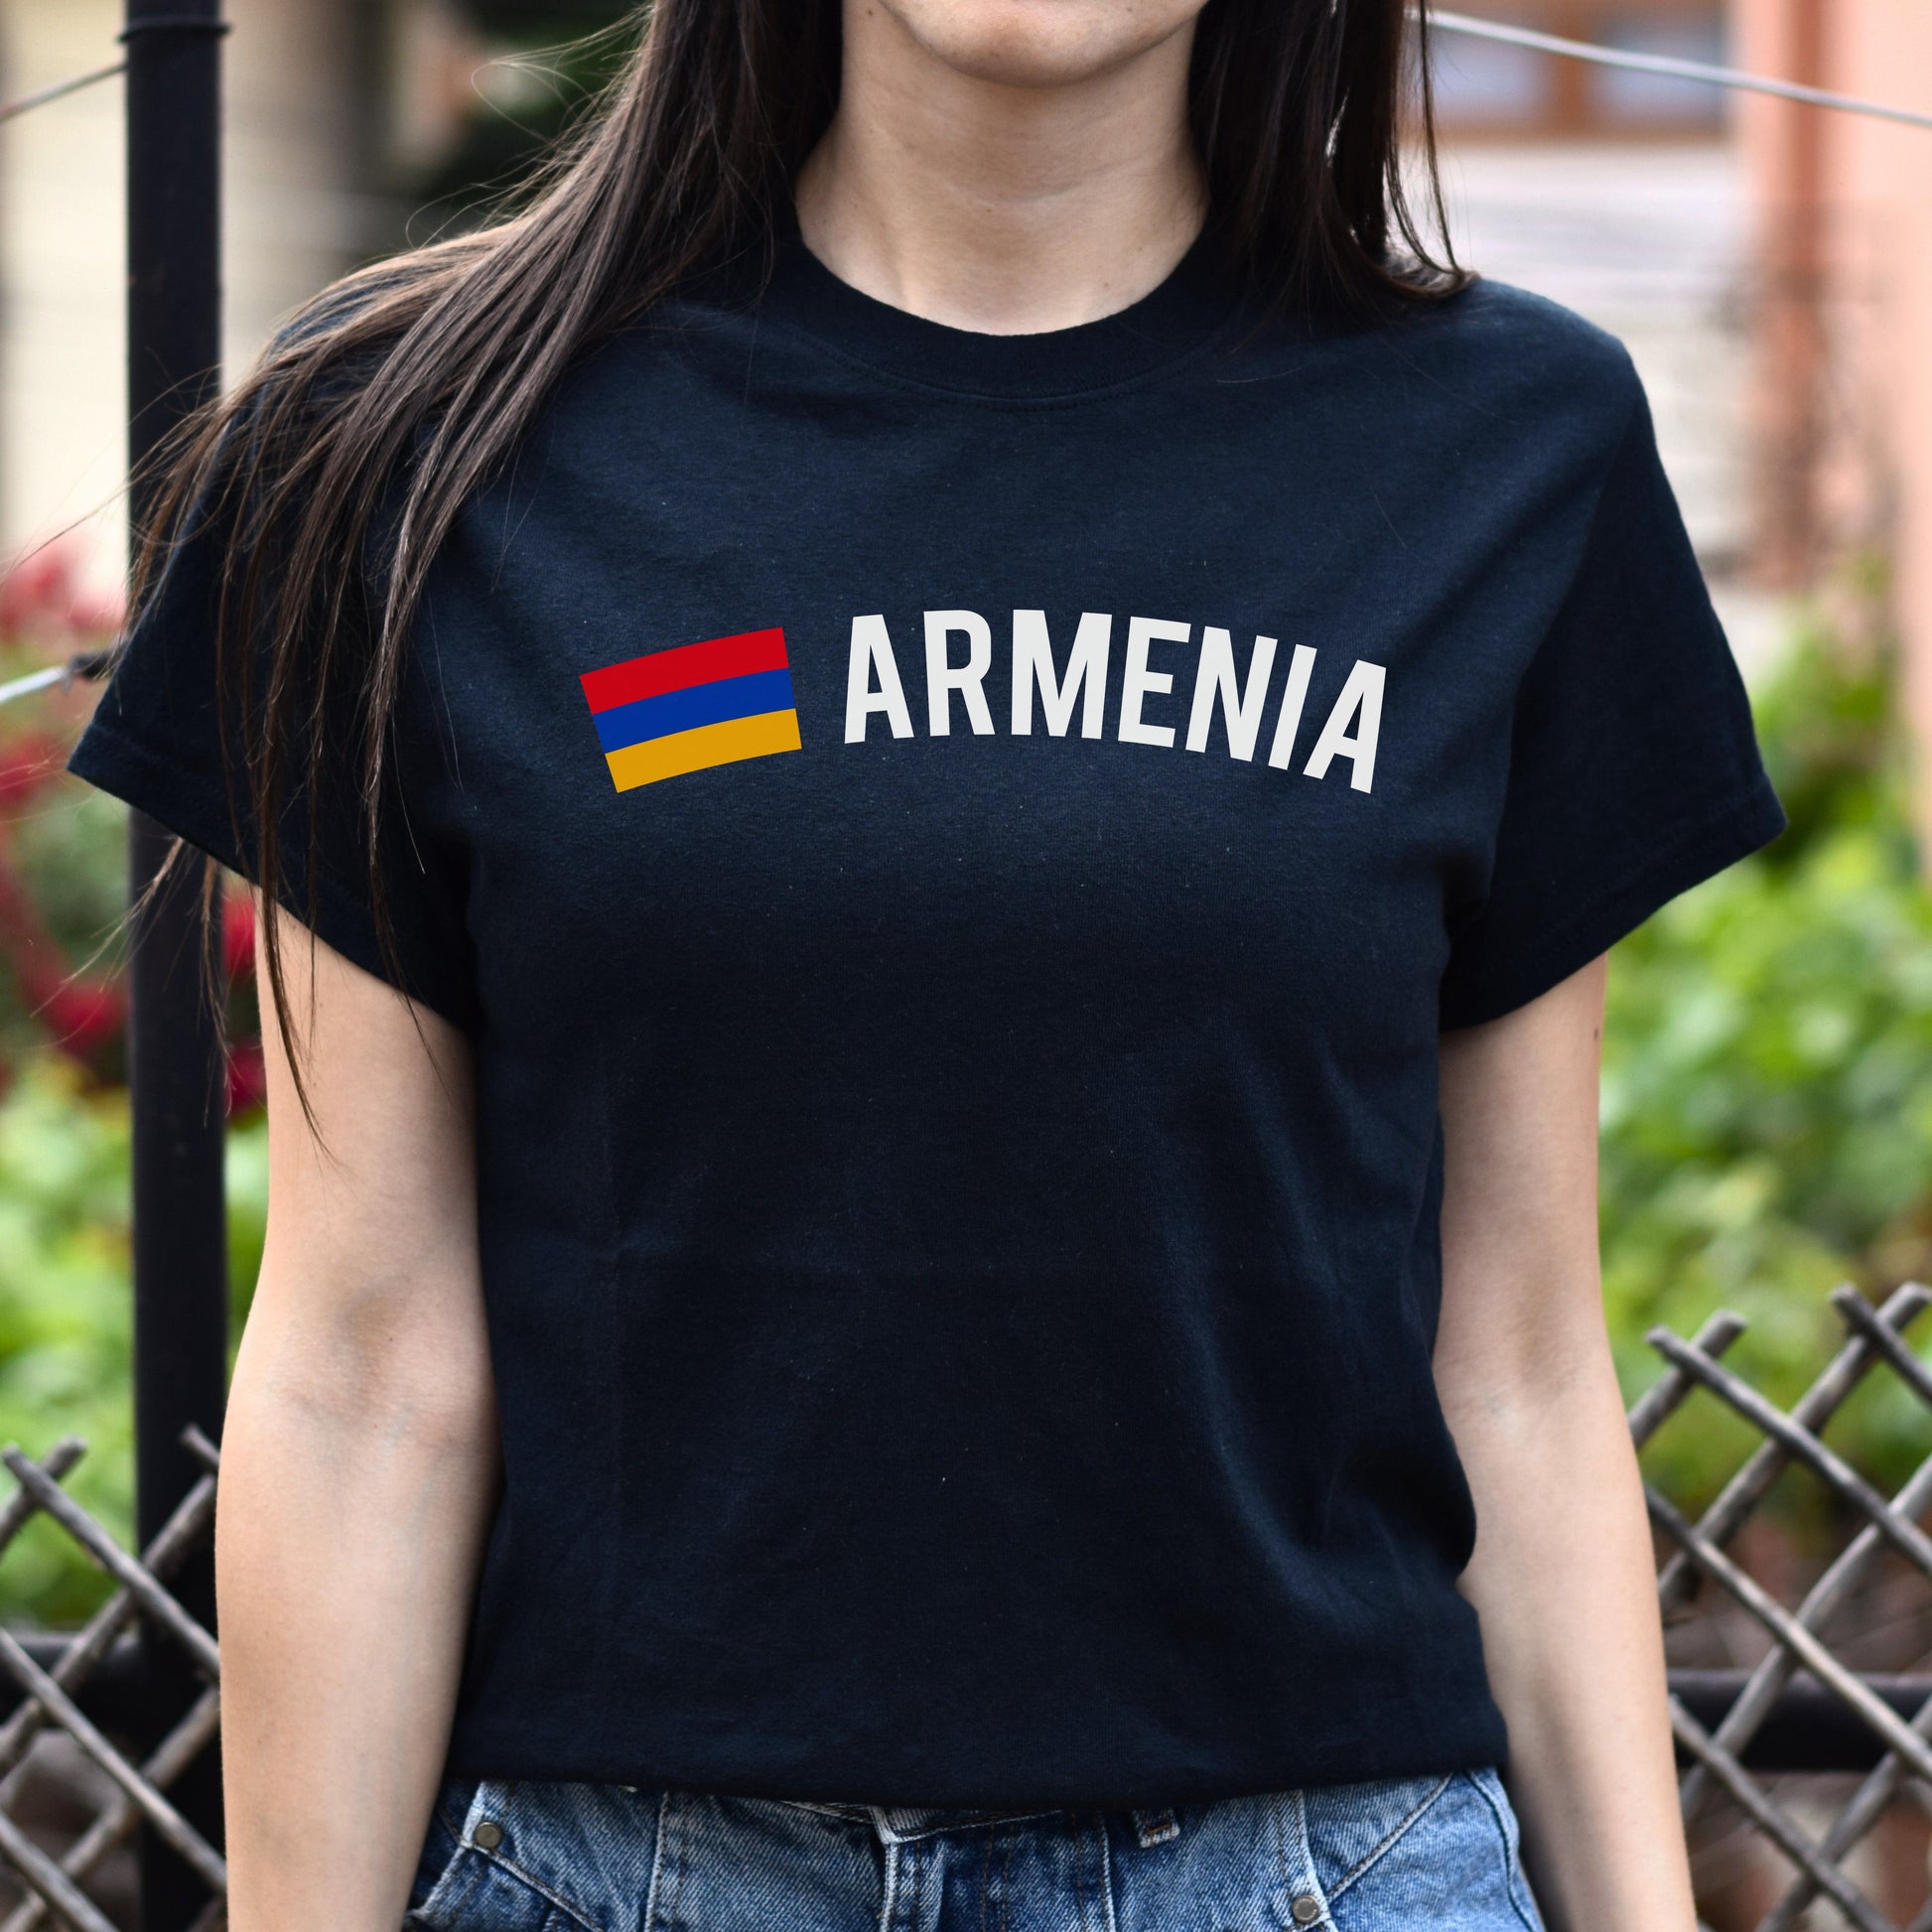 Armenia Unisex T-shirt gift Armenian flag tee Yerevan White Black Dark Heather-Black-Family-Gift-Planet